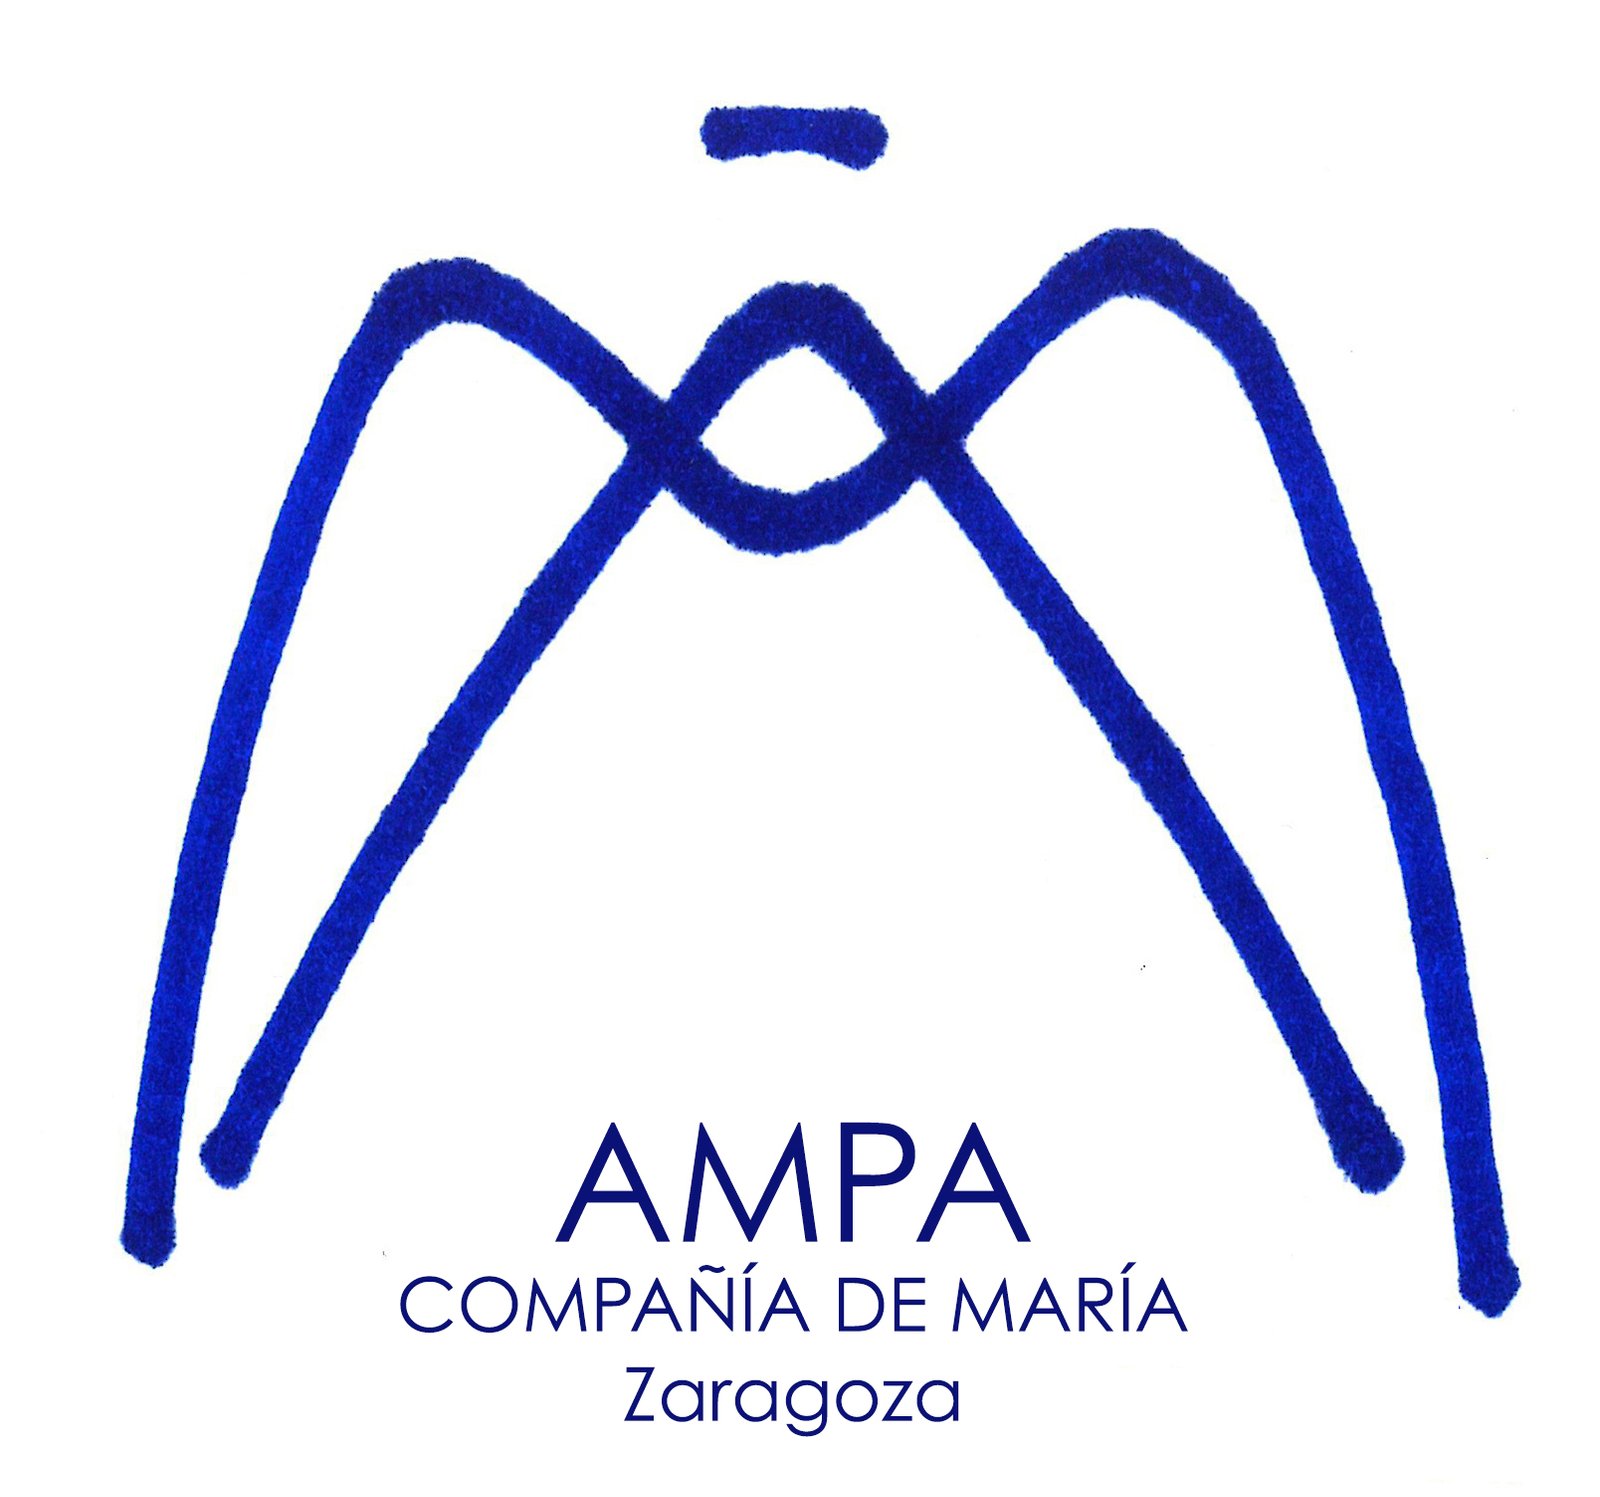 AMPA Compañía de María Zaragoza